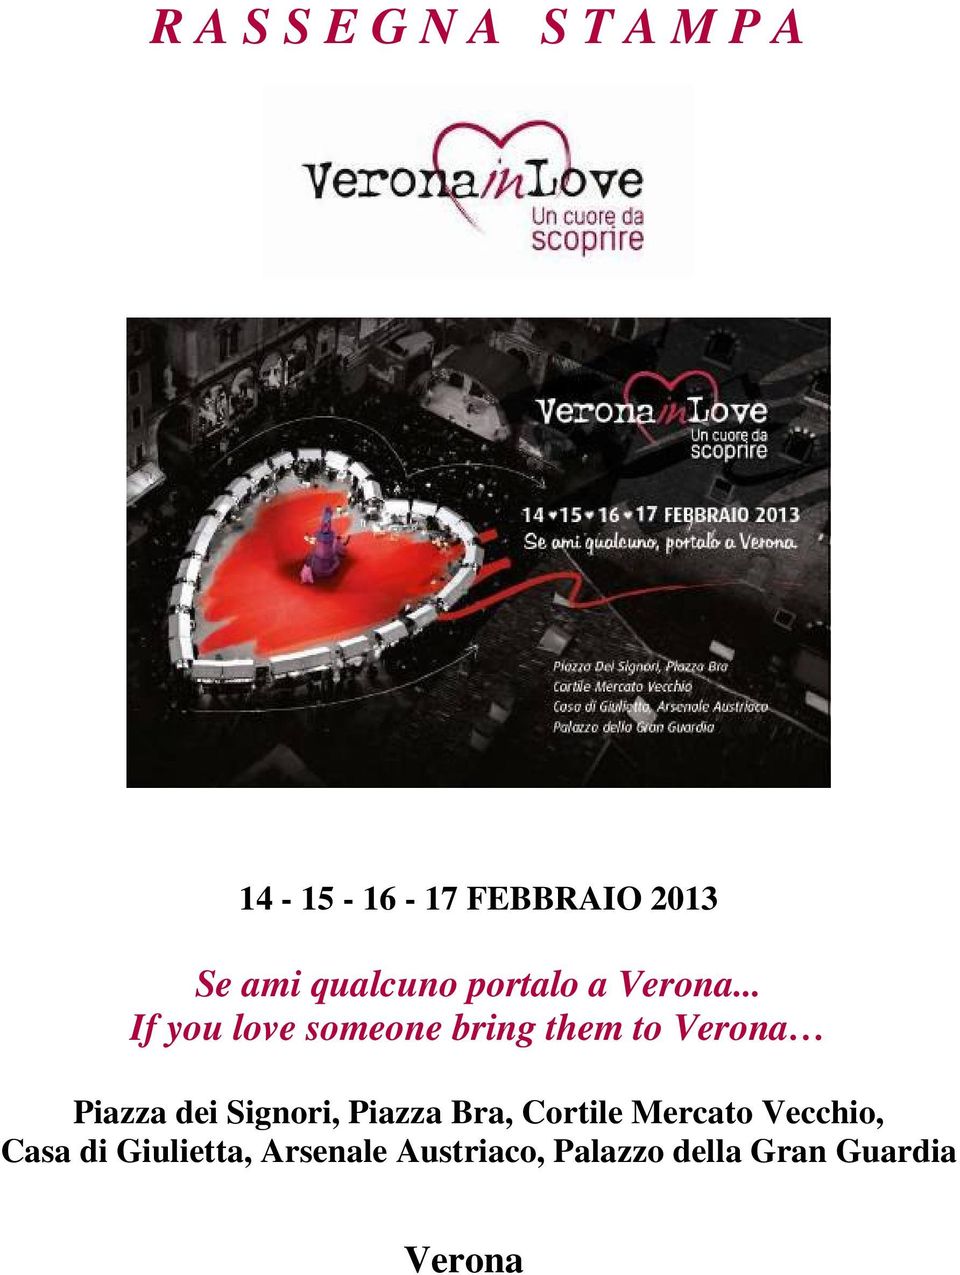 .. If you love someone bring them to Verona Piazza dei Signori,